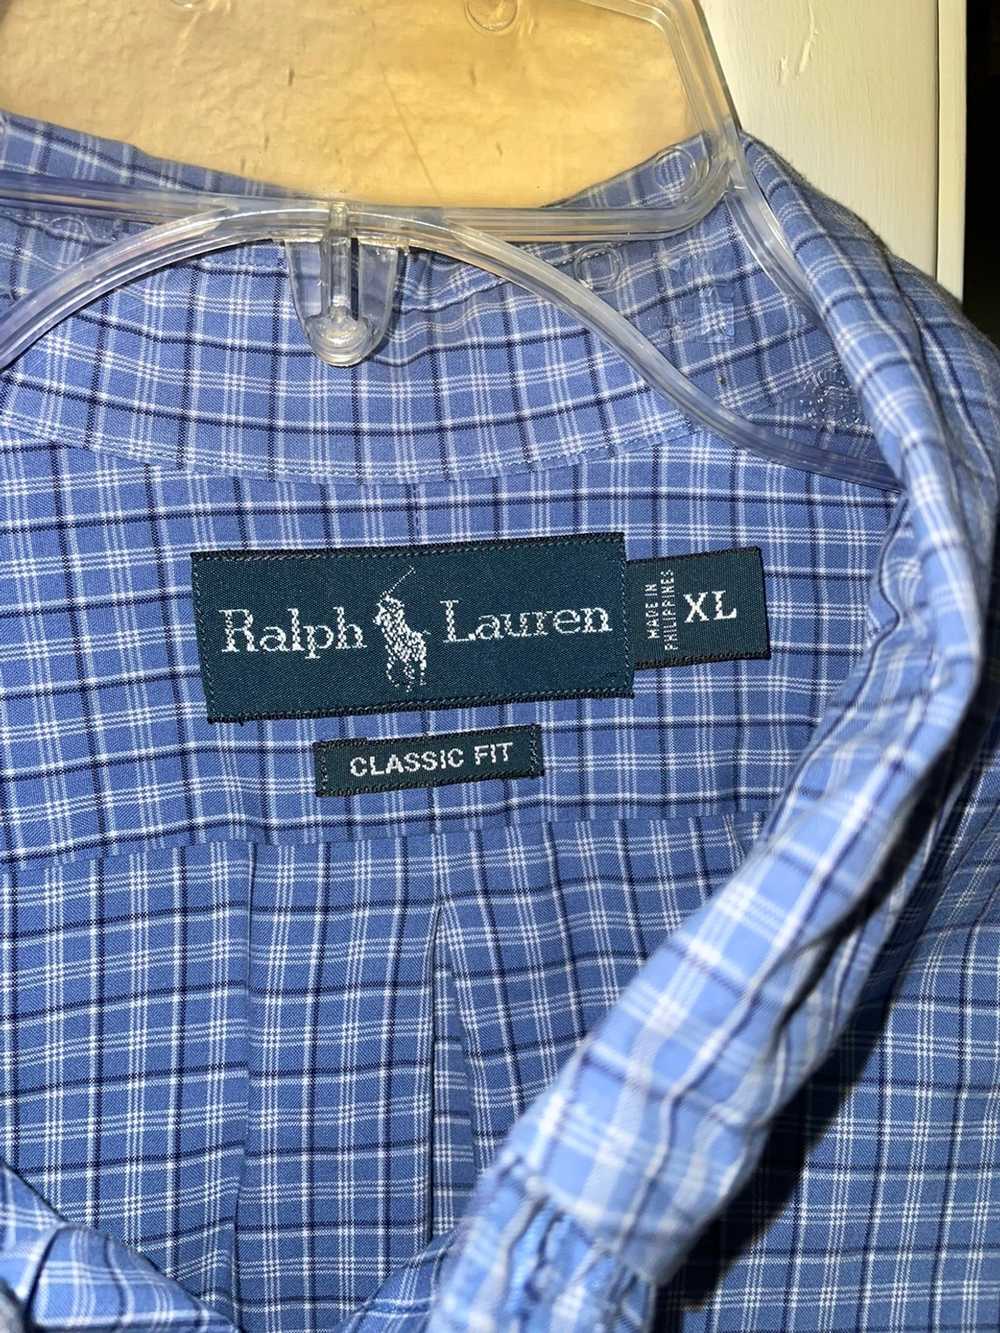 Ralph Lauren Ralph Lauren long sleeve button up - image 3